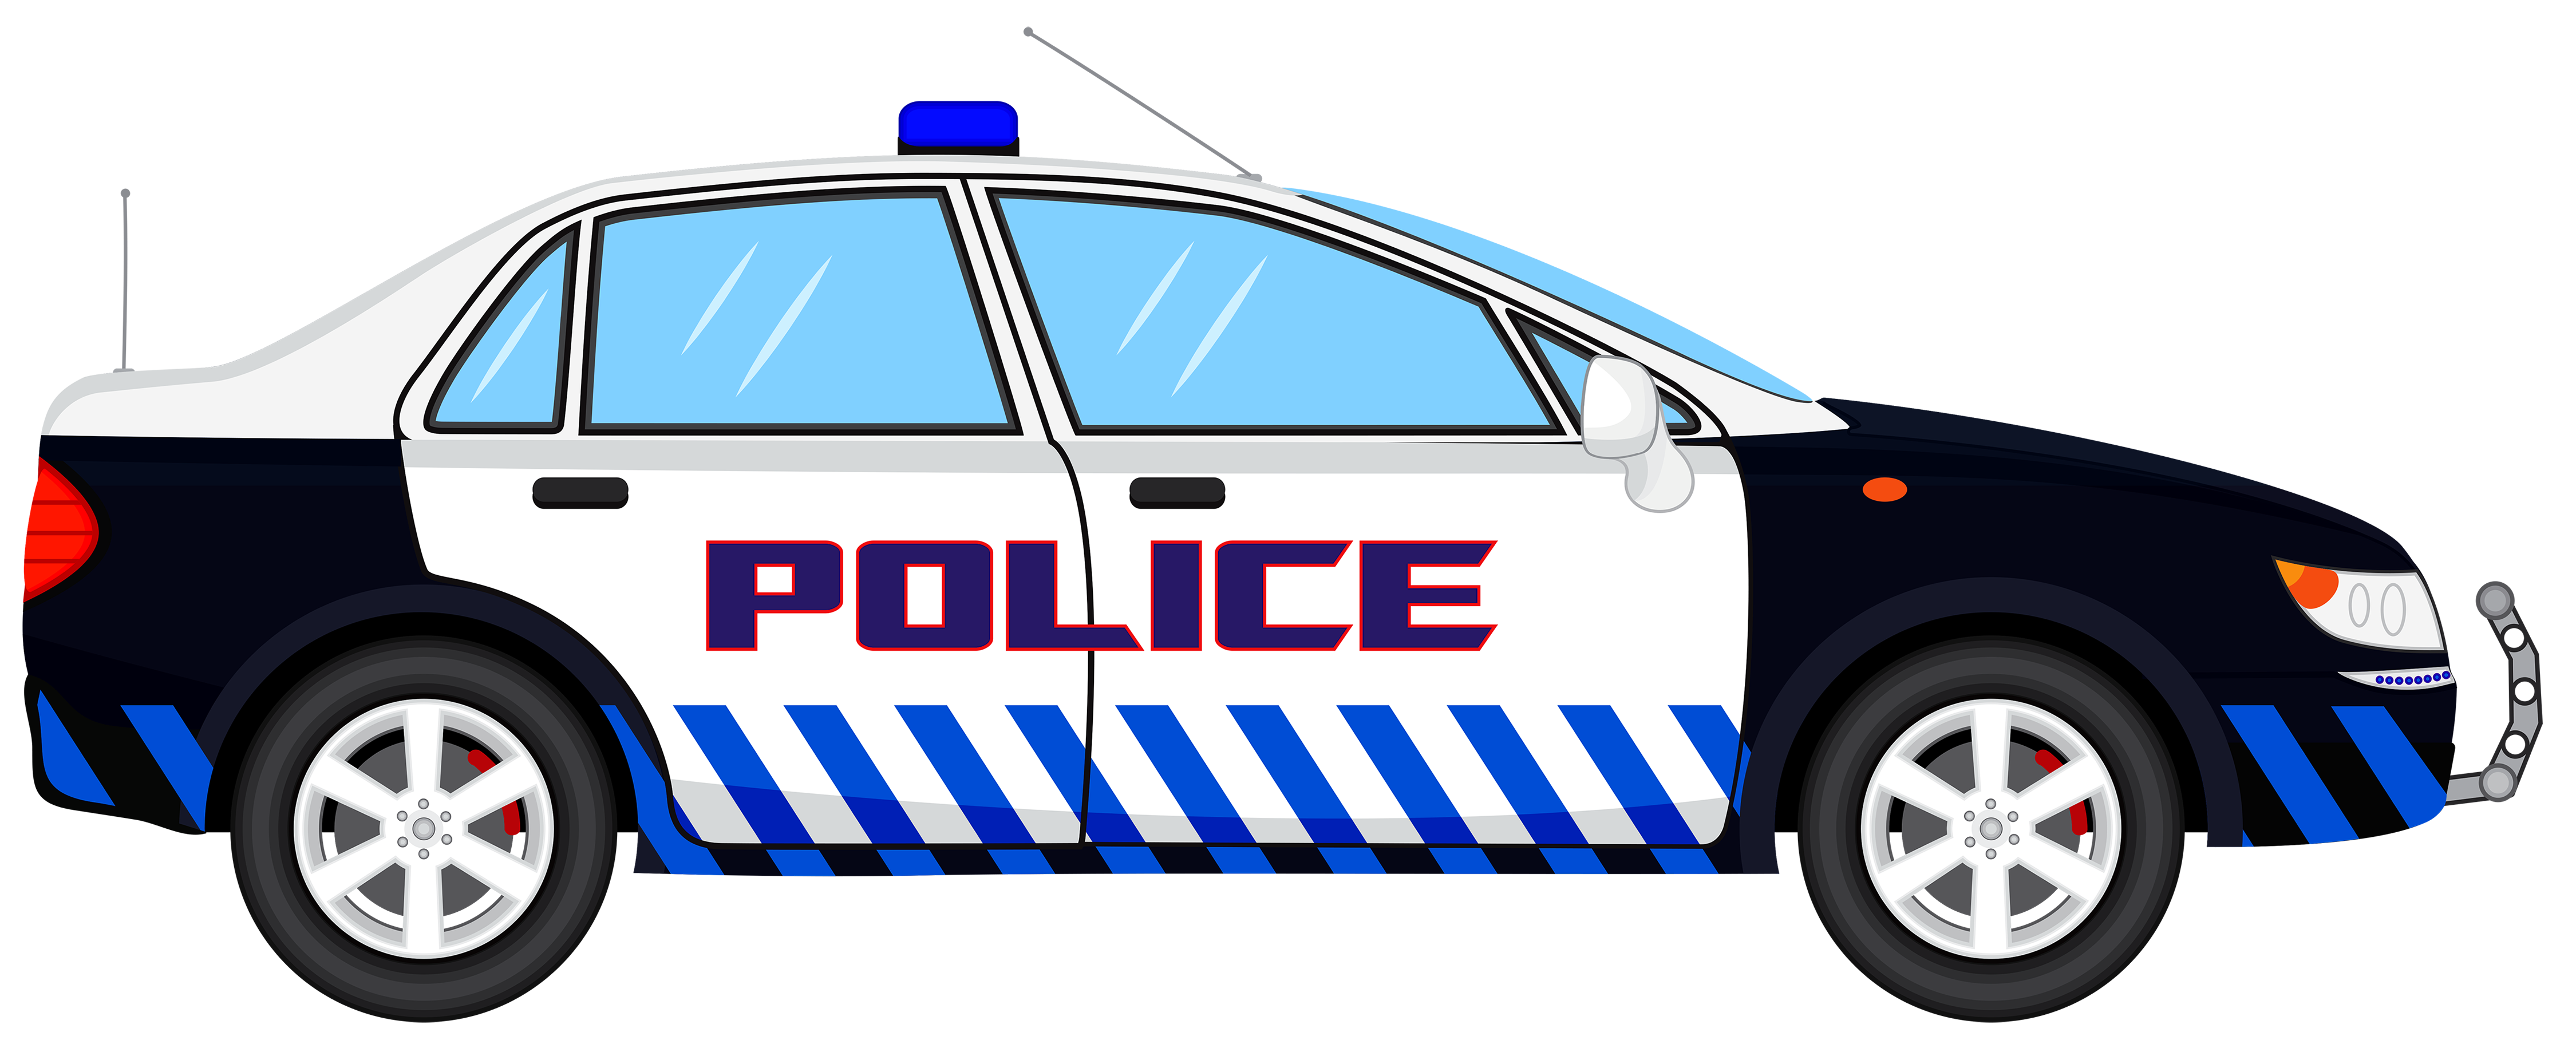 Police Car Transparent Clip Art Image - Law Enforcement, Transparent background PNG HD thumbnail